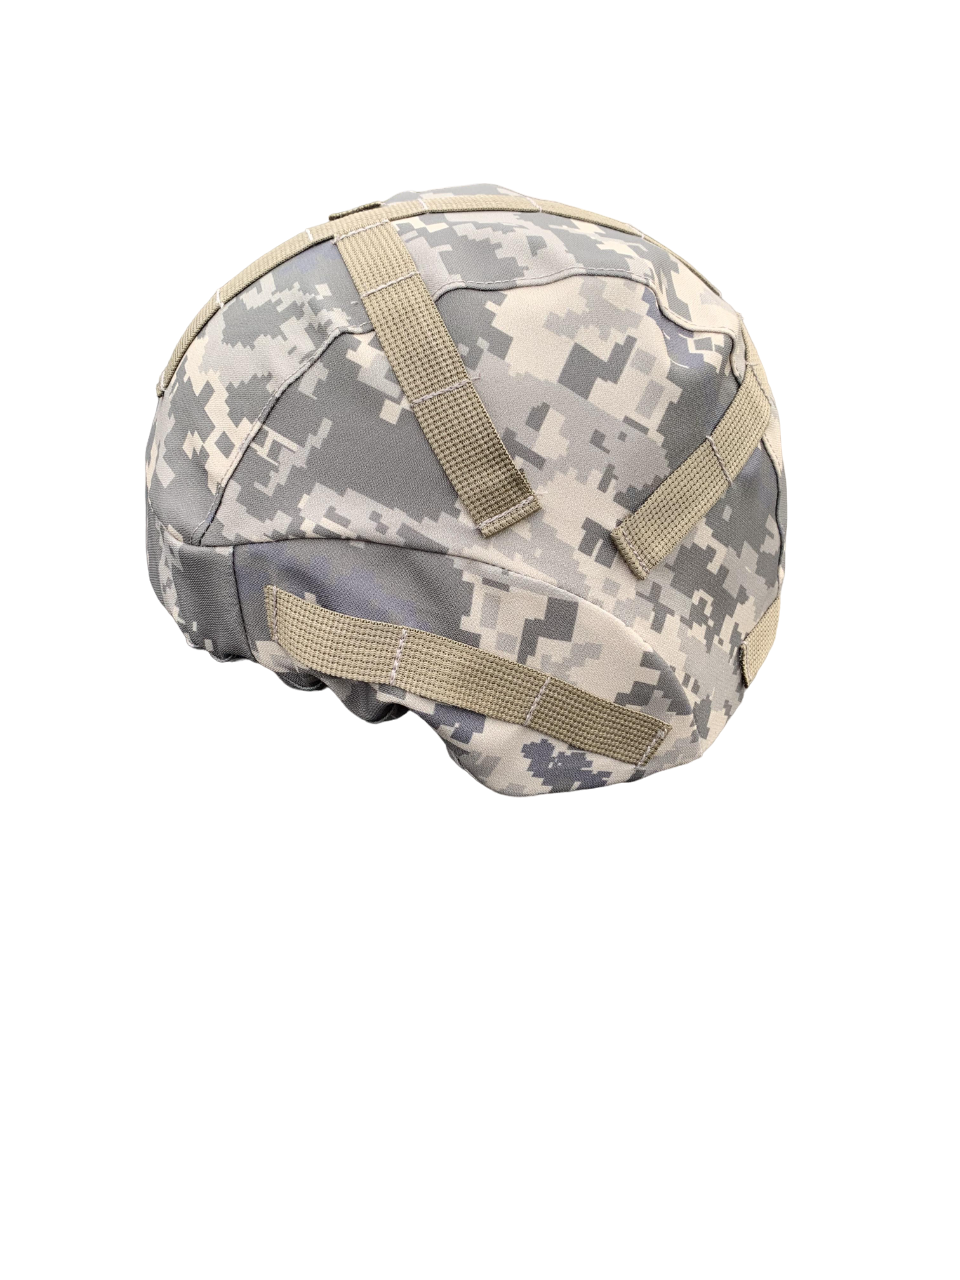 Чехол кавер универсальный на шлем с системой молле для маскировки Пиксель